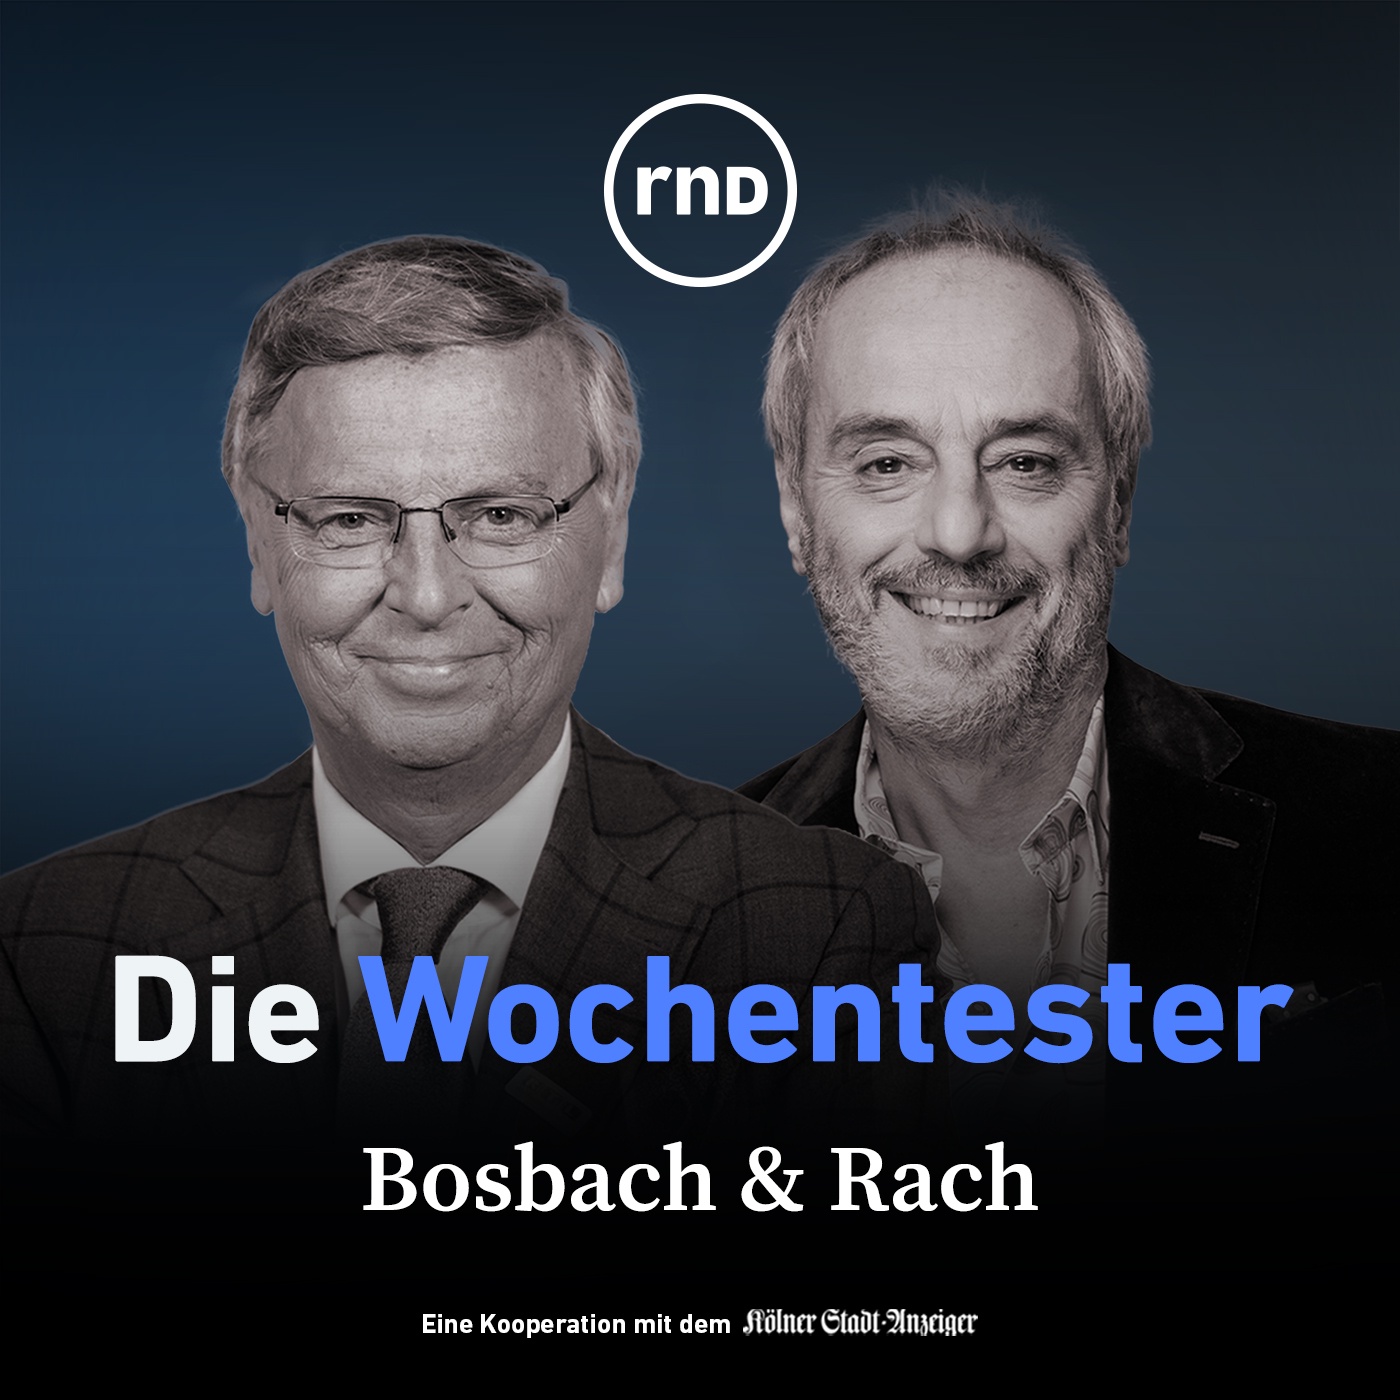 Bosbach & Rach - Kompakt - 30 Minuten - mit Manuel Frondel, Enzo Weber und Ingo Froböse